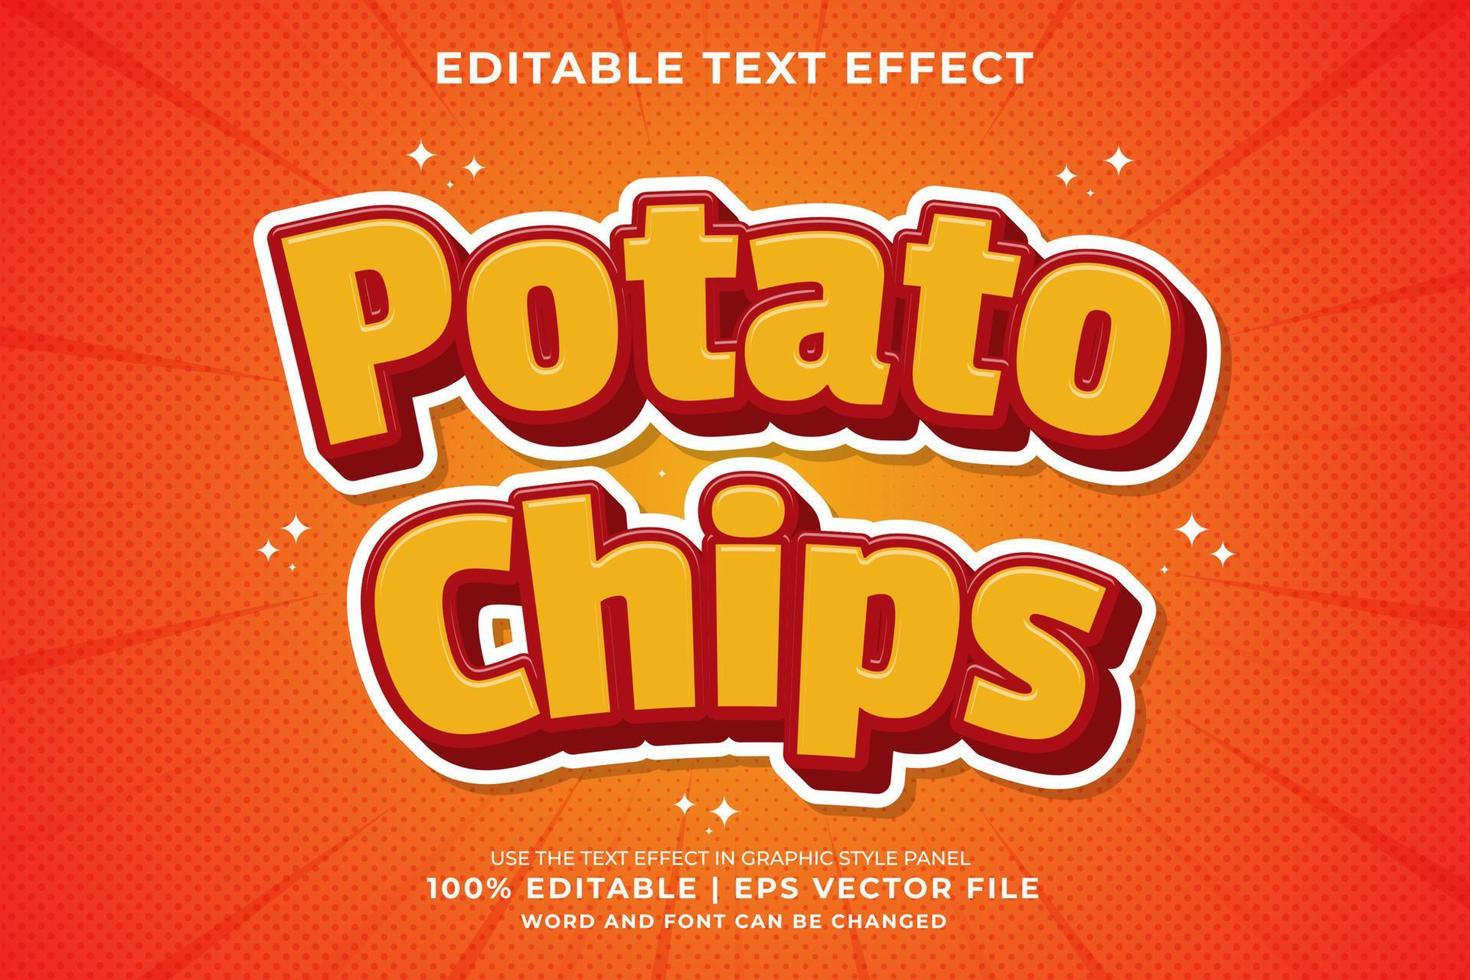 efeito de texto editável - vetor premium de estilo de modelo de desenho animado de batatas fritas